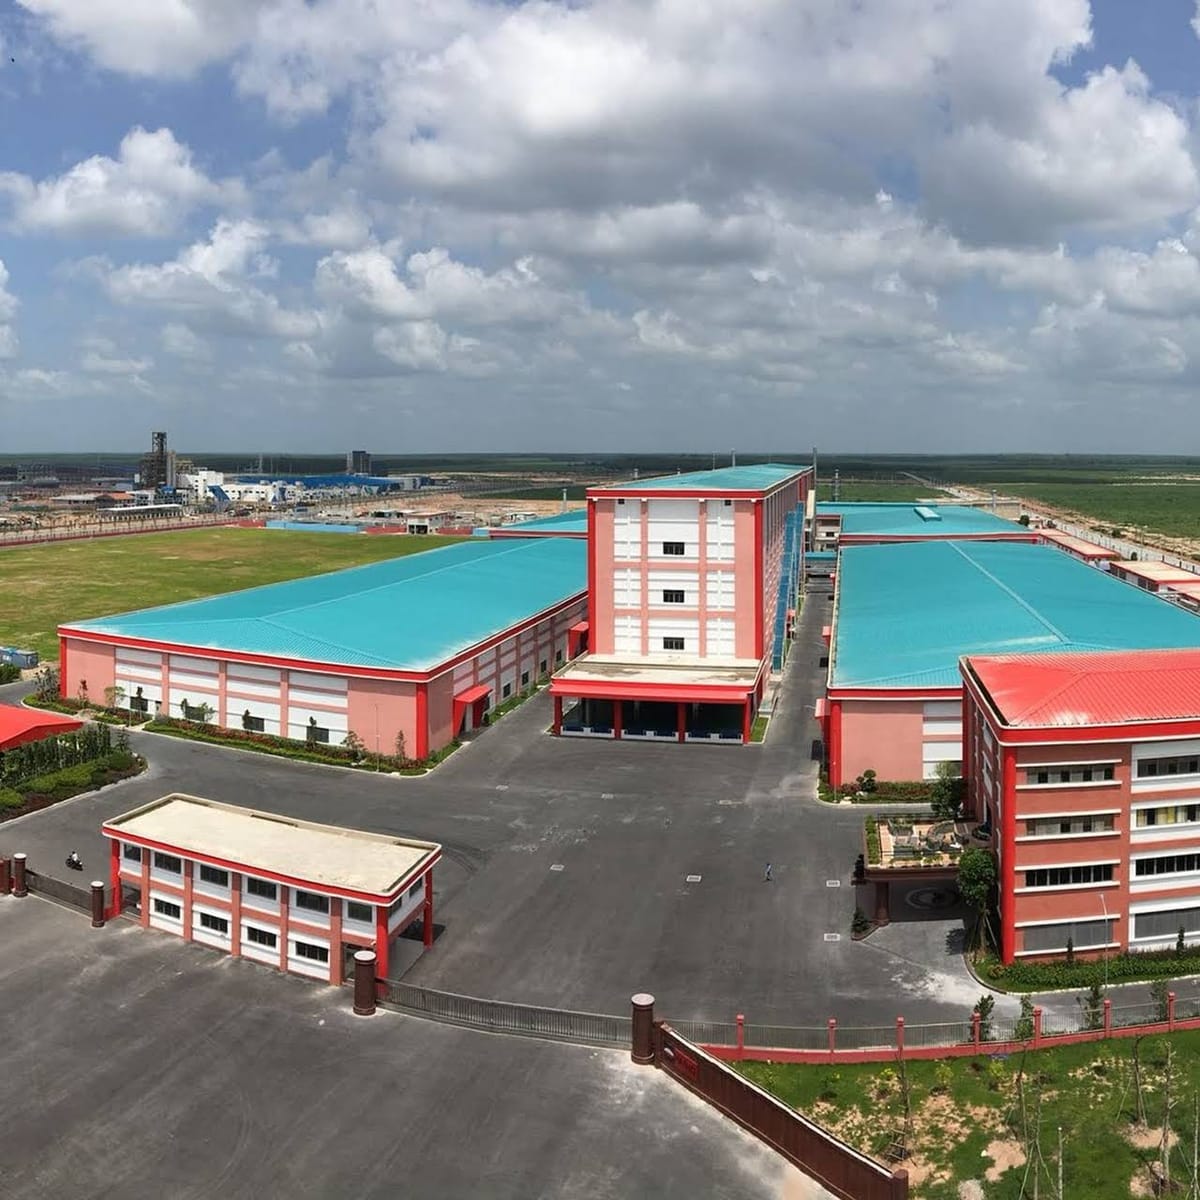 Đất nền đối diện công ty Paihong KCN Bàu Bàng giá gốc 9,5 triệu/m2